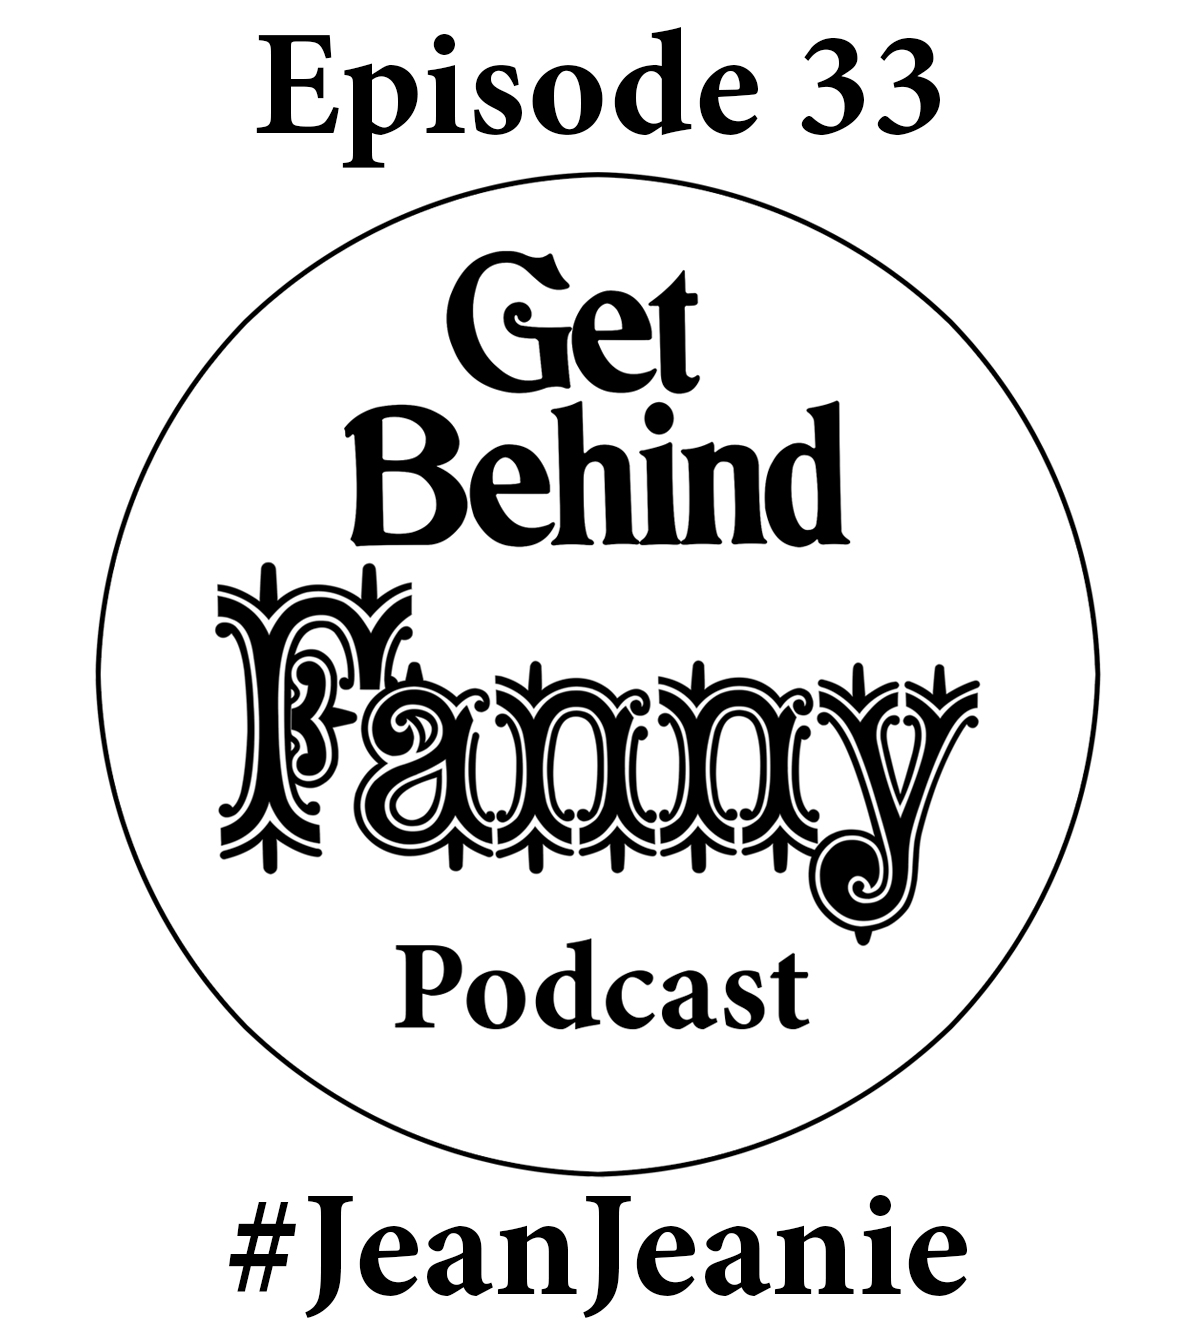 Get Behind Fanny: Episode 33